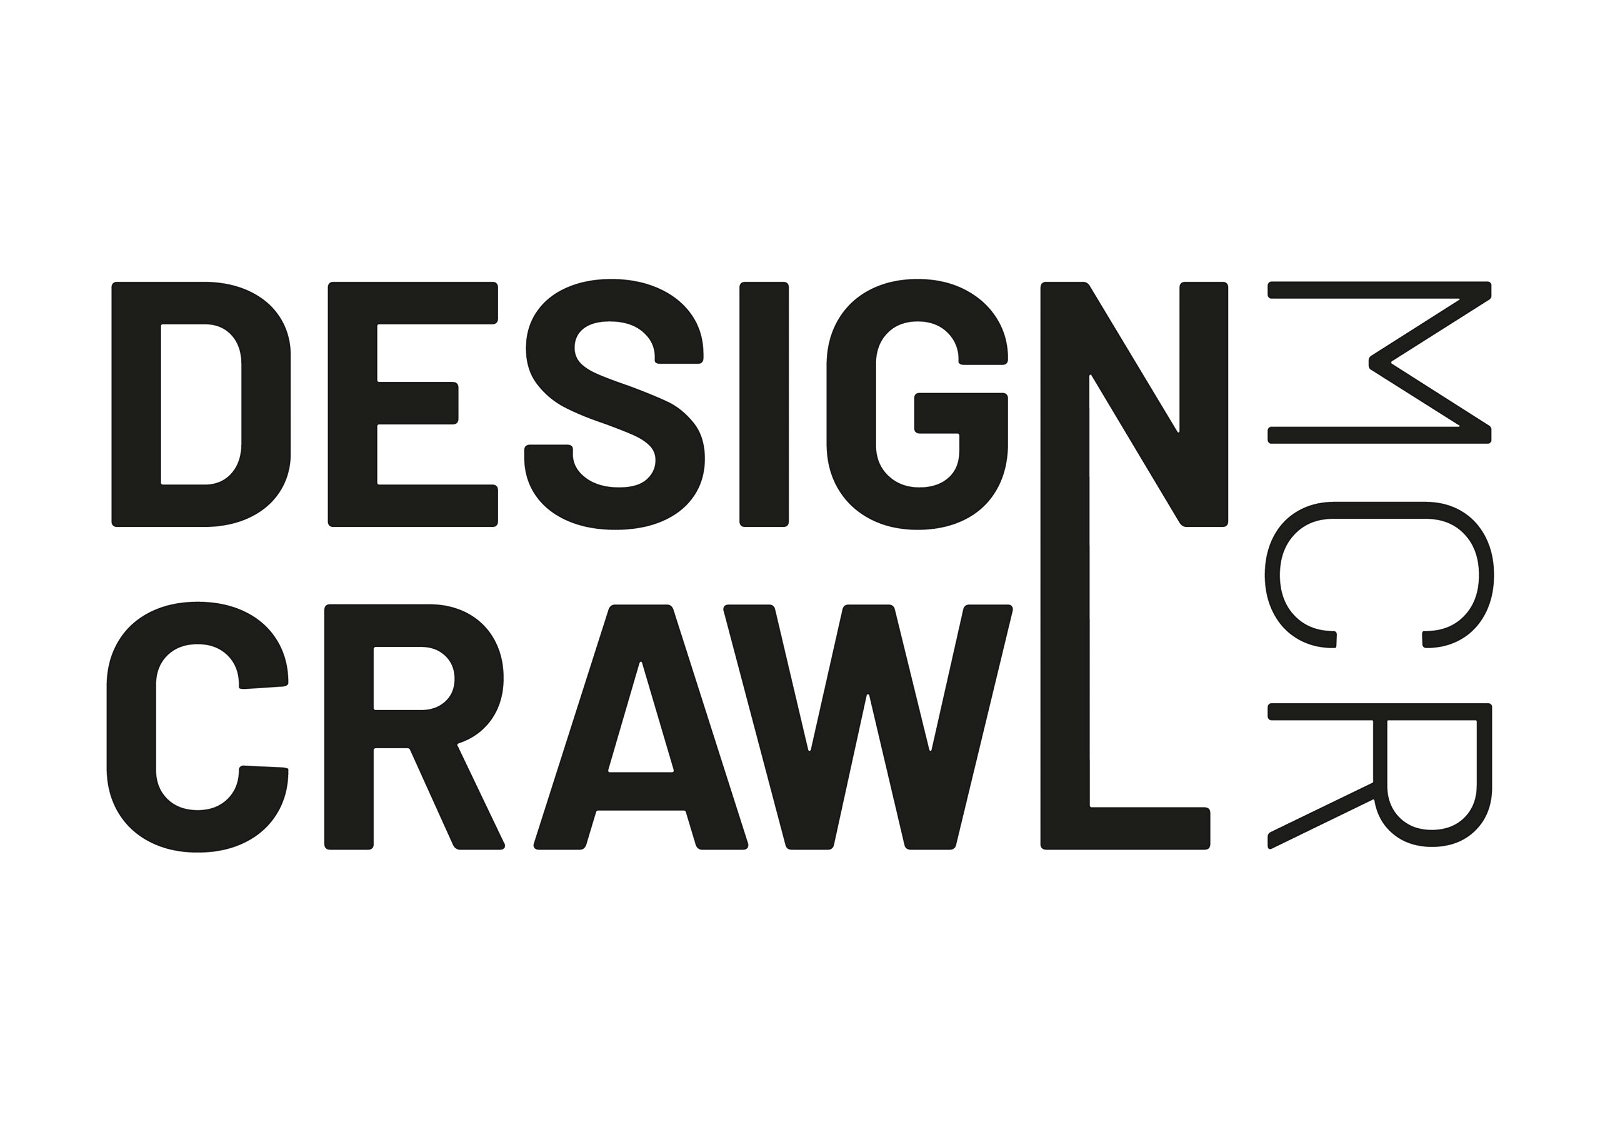 BLACK DESIGN CRAWL 01 scaled